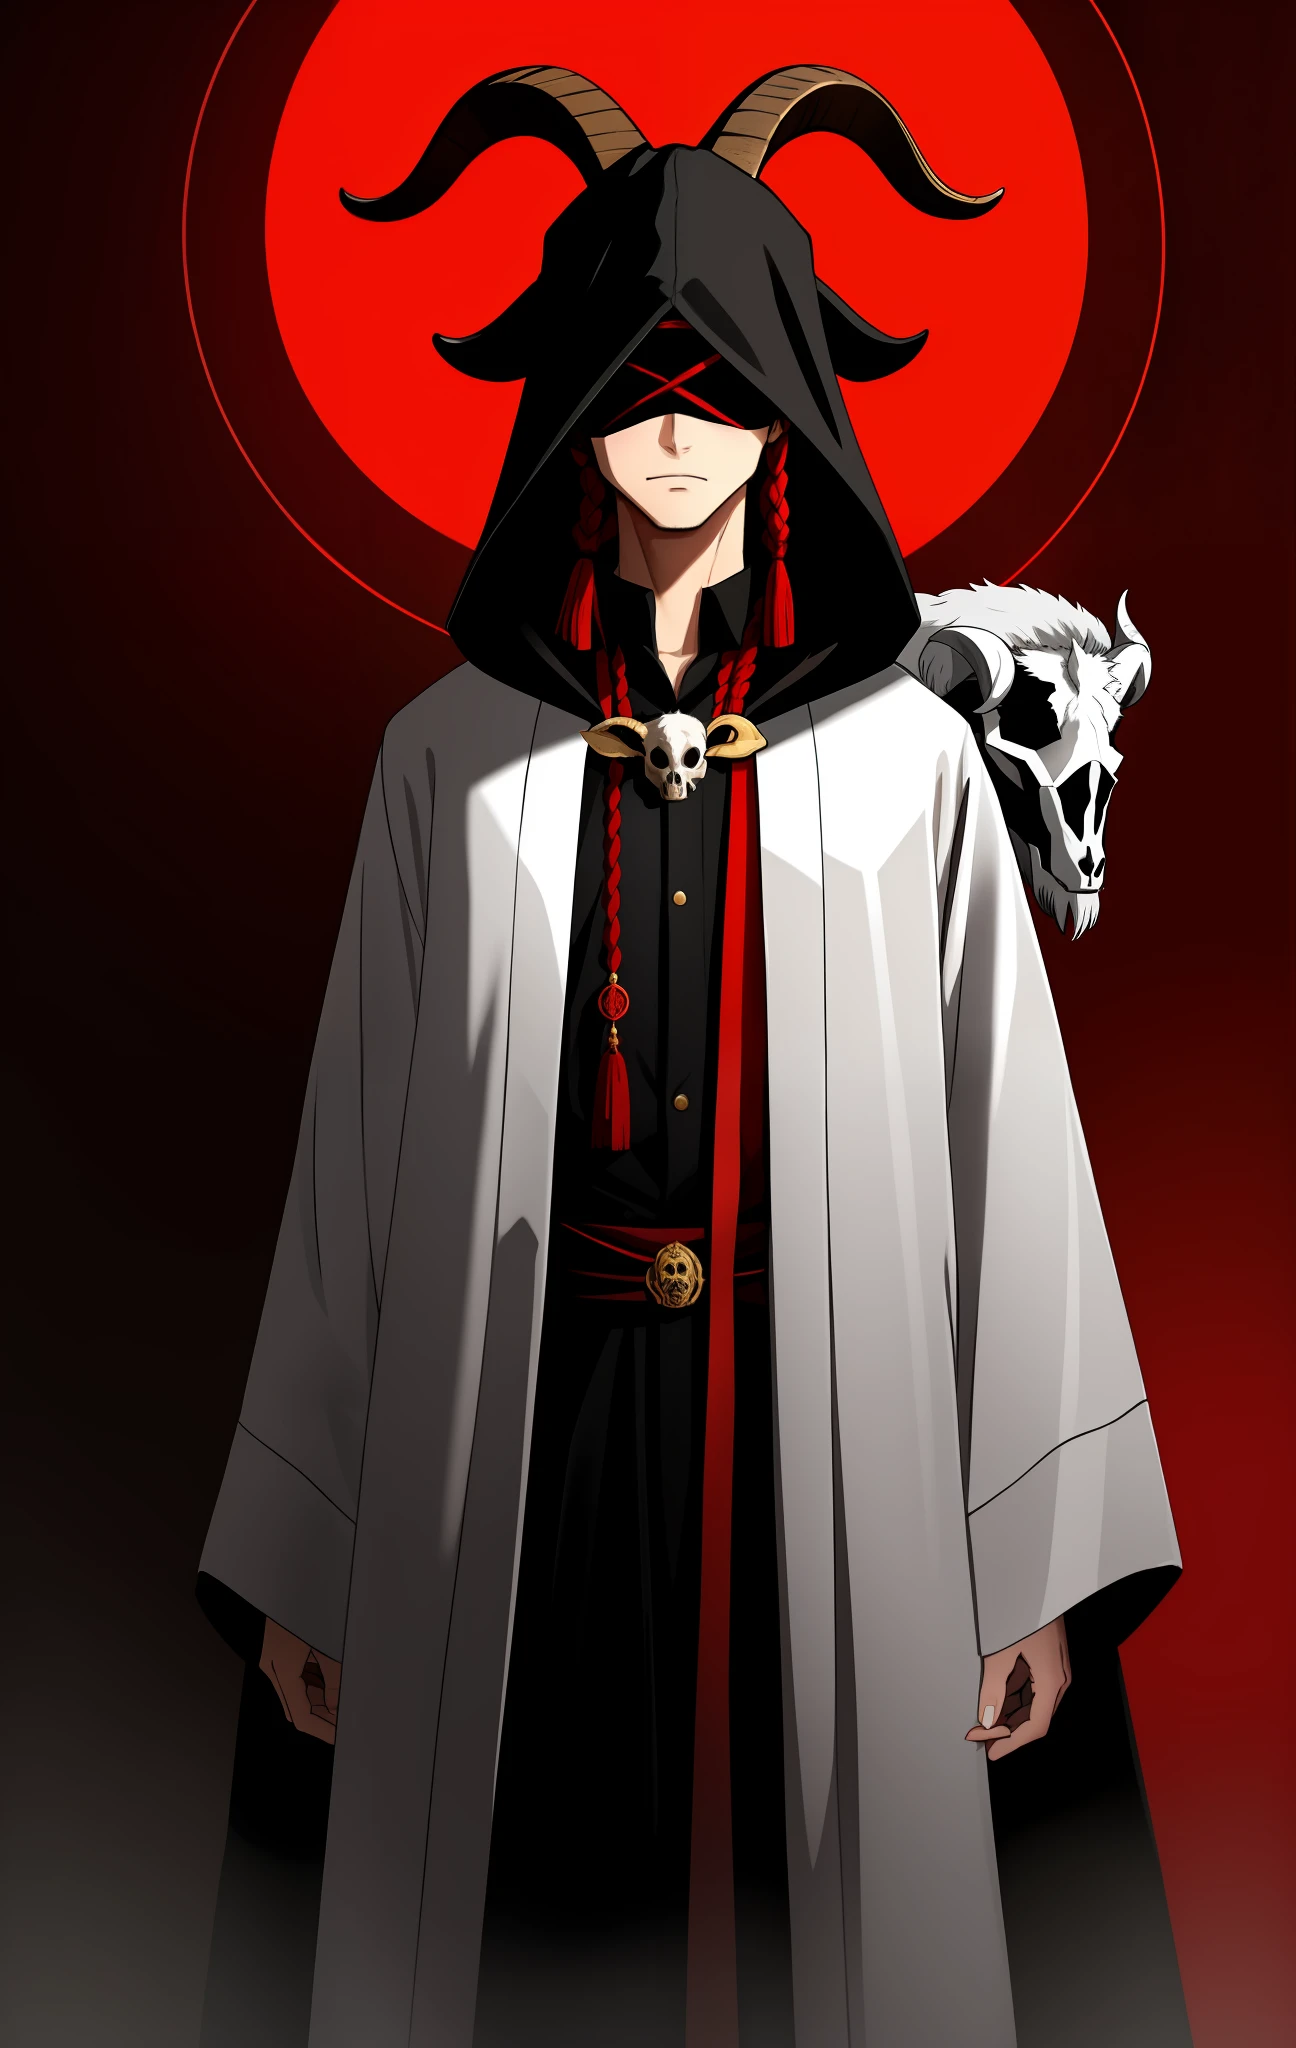 Jovem com uma venda cobrindo os olhos, usando uma caveira de cabra na cabeça, vestindo um manto cerimonial de cor vermelha e preta, com garras, homem cego, aura satânica, segurando um crânio de cabra